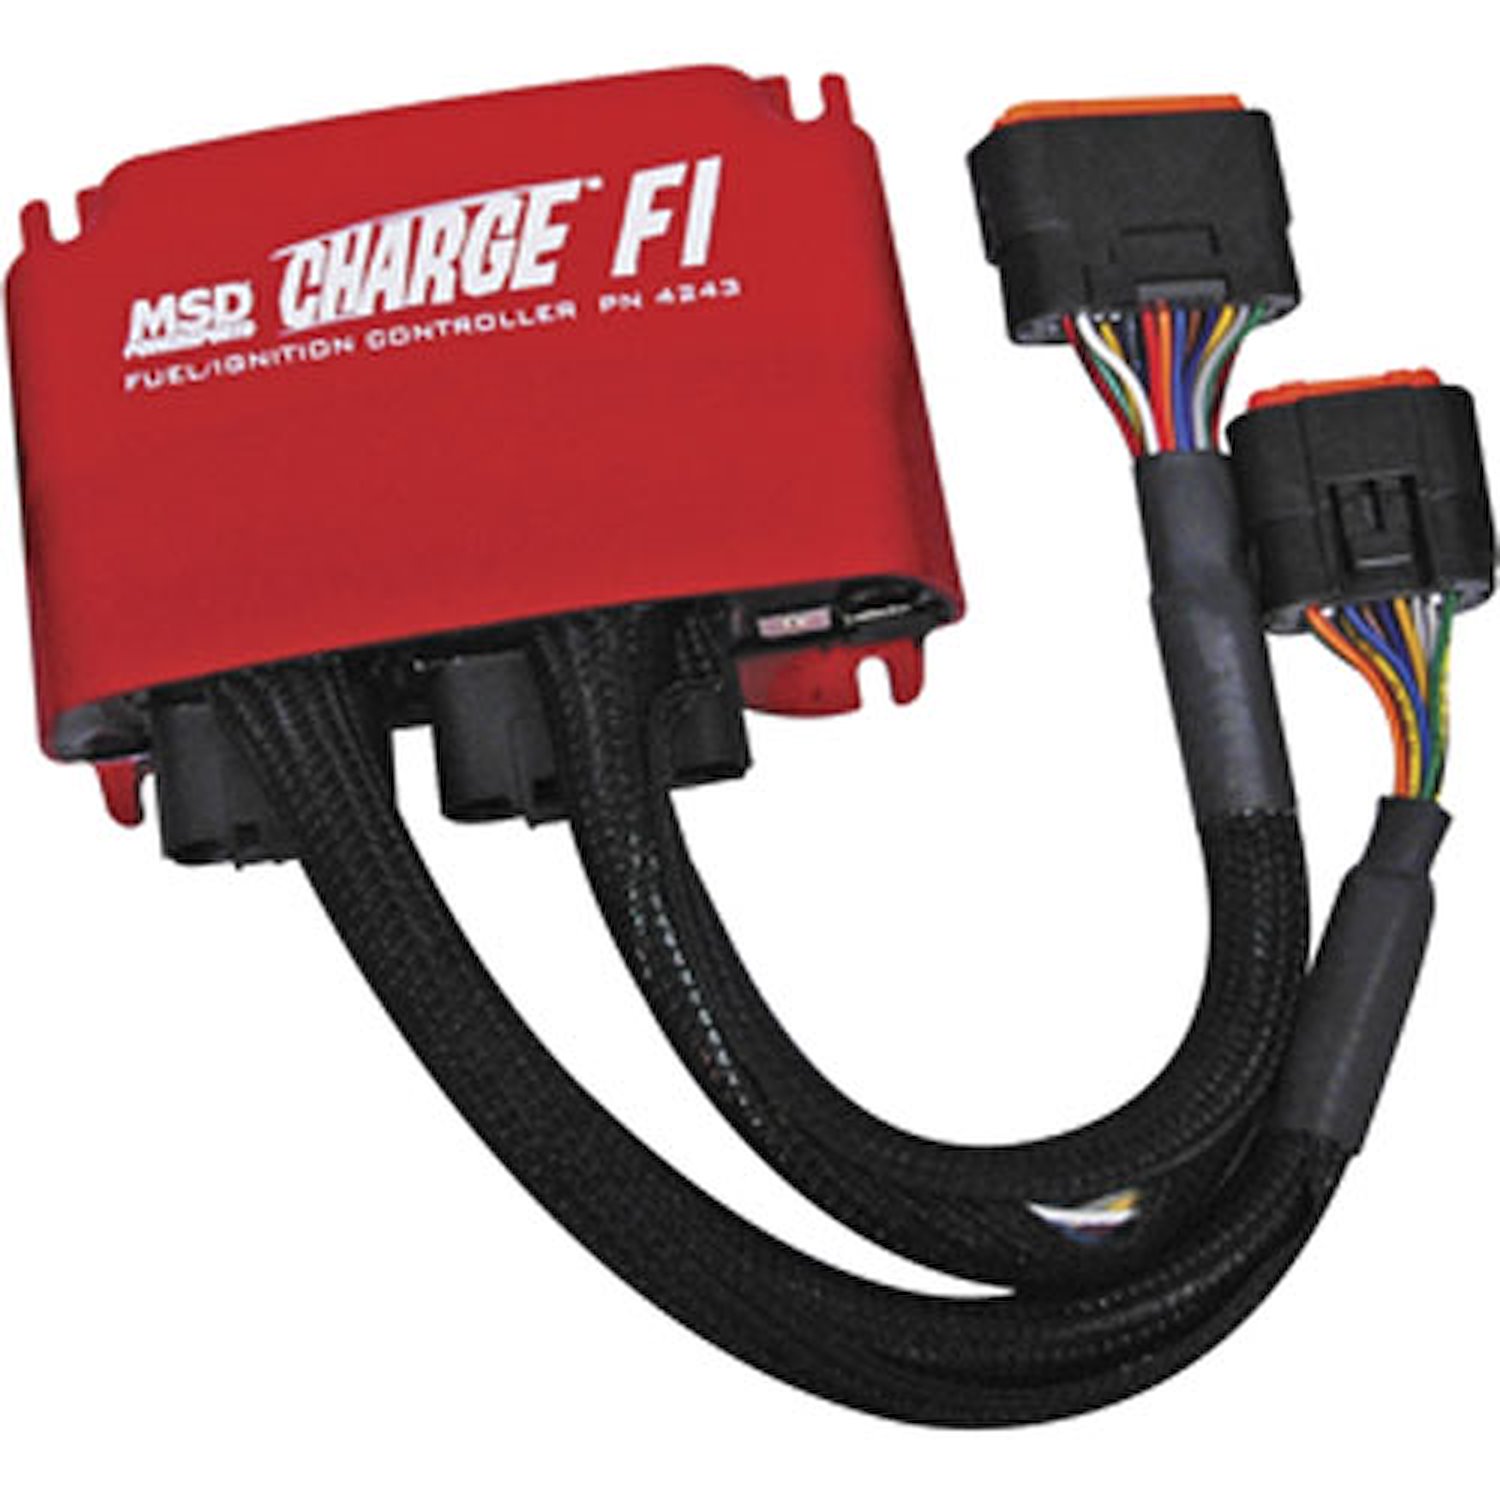 Charge FI Fuel/Ignition Controller Kawasaki Teryx 750FI